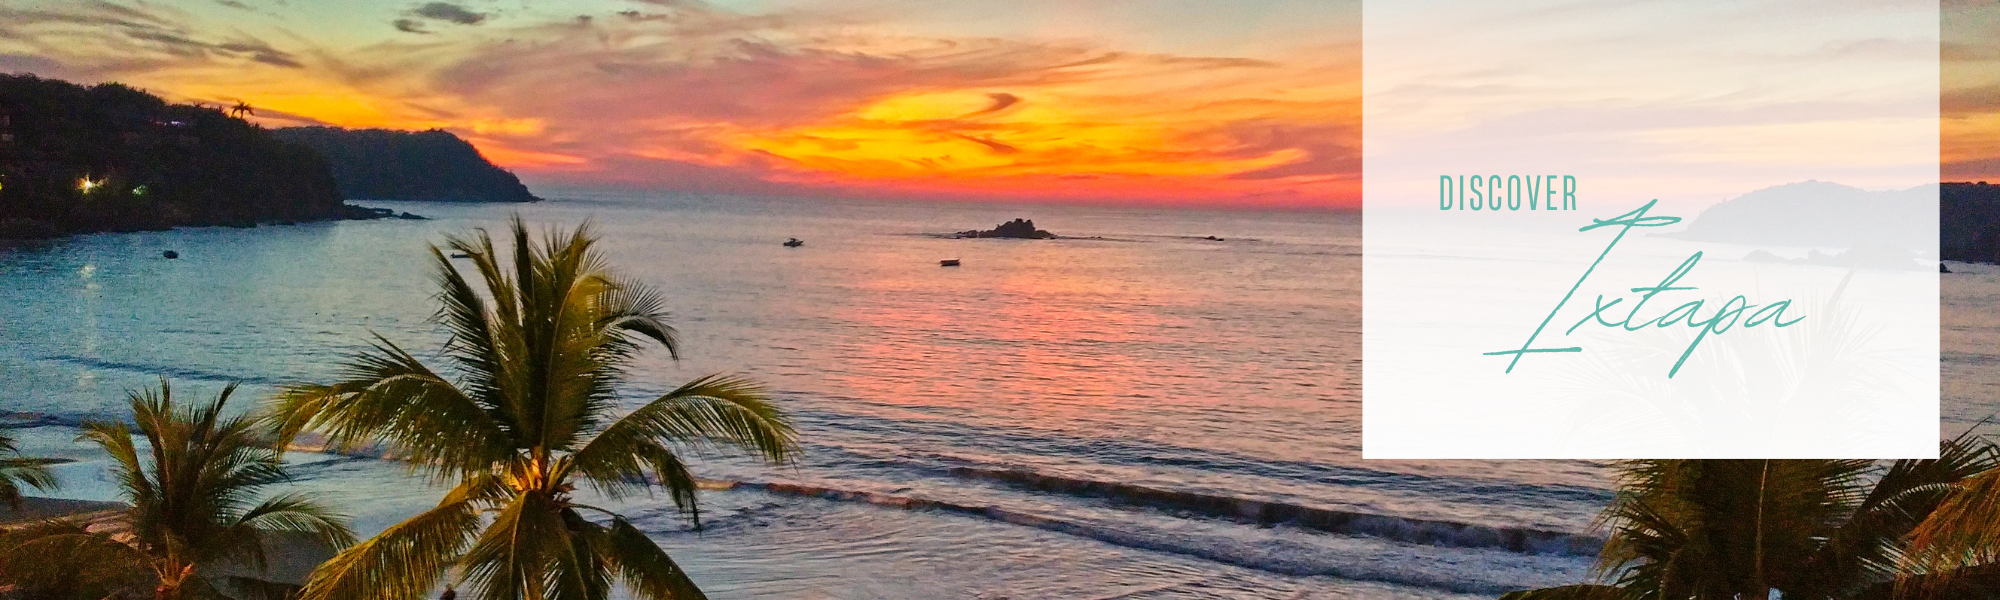 Sunset over beach in Ixtapa